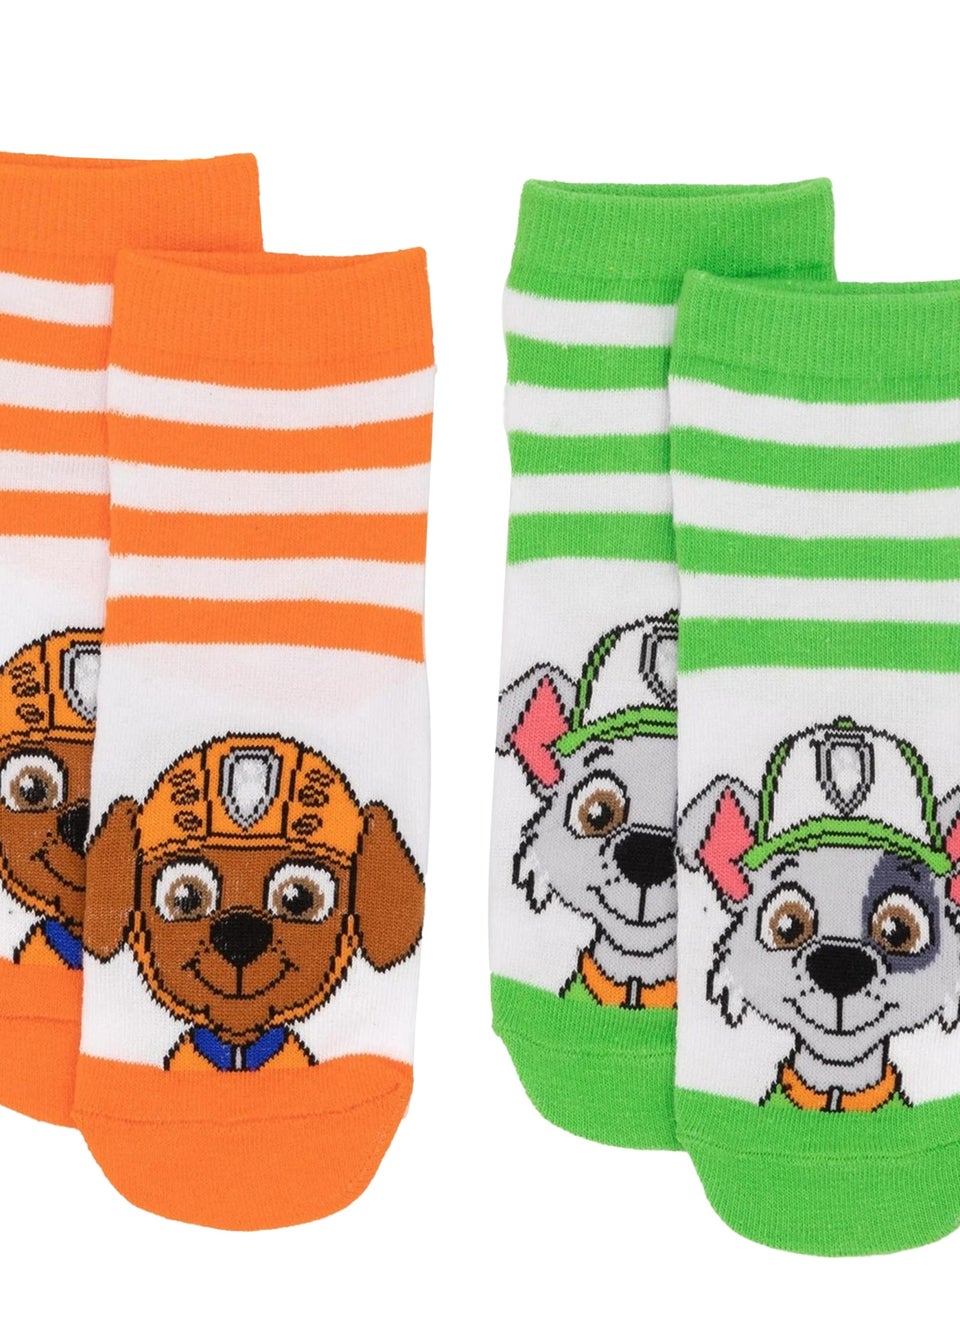 Paw Patrol Kids Multi Socks (Pack of 5)